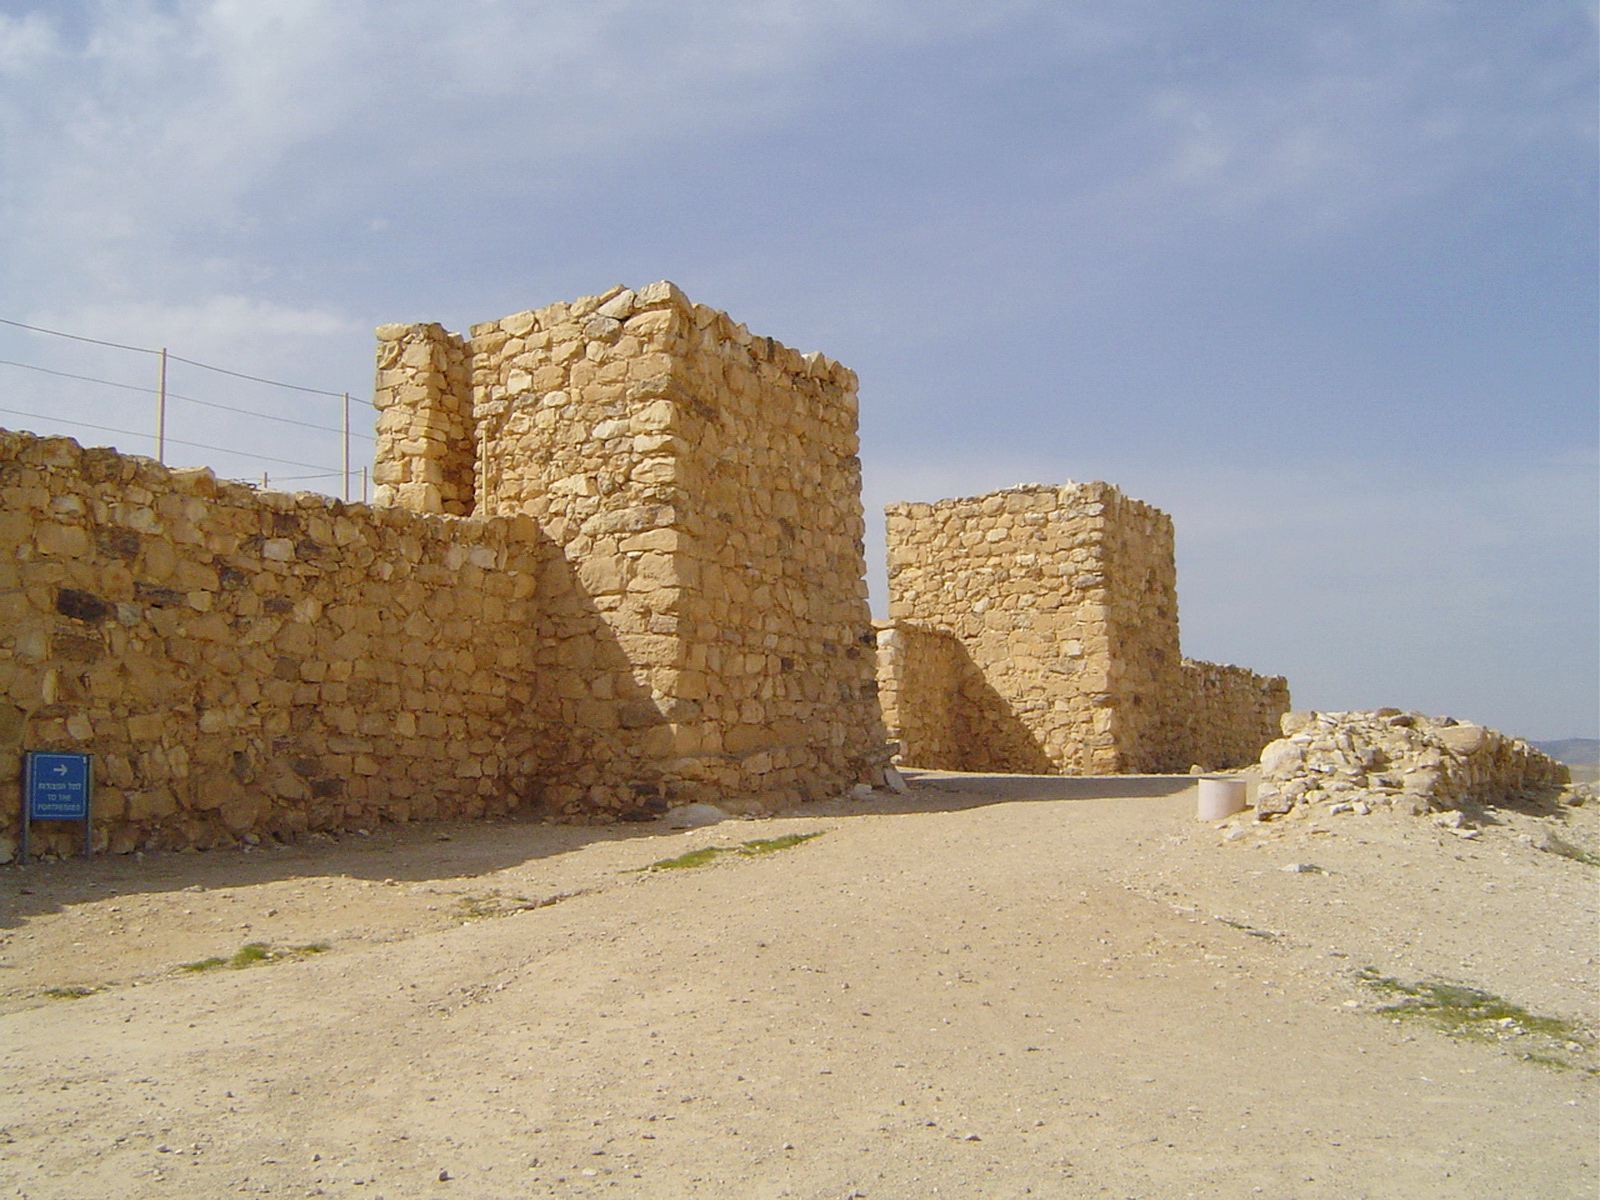 תל ערד -  שרידי ערים מתקופת הברזל (-/+ 1200 לפנ